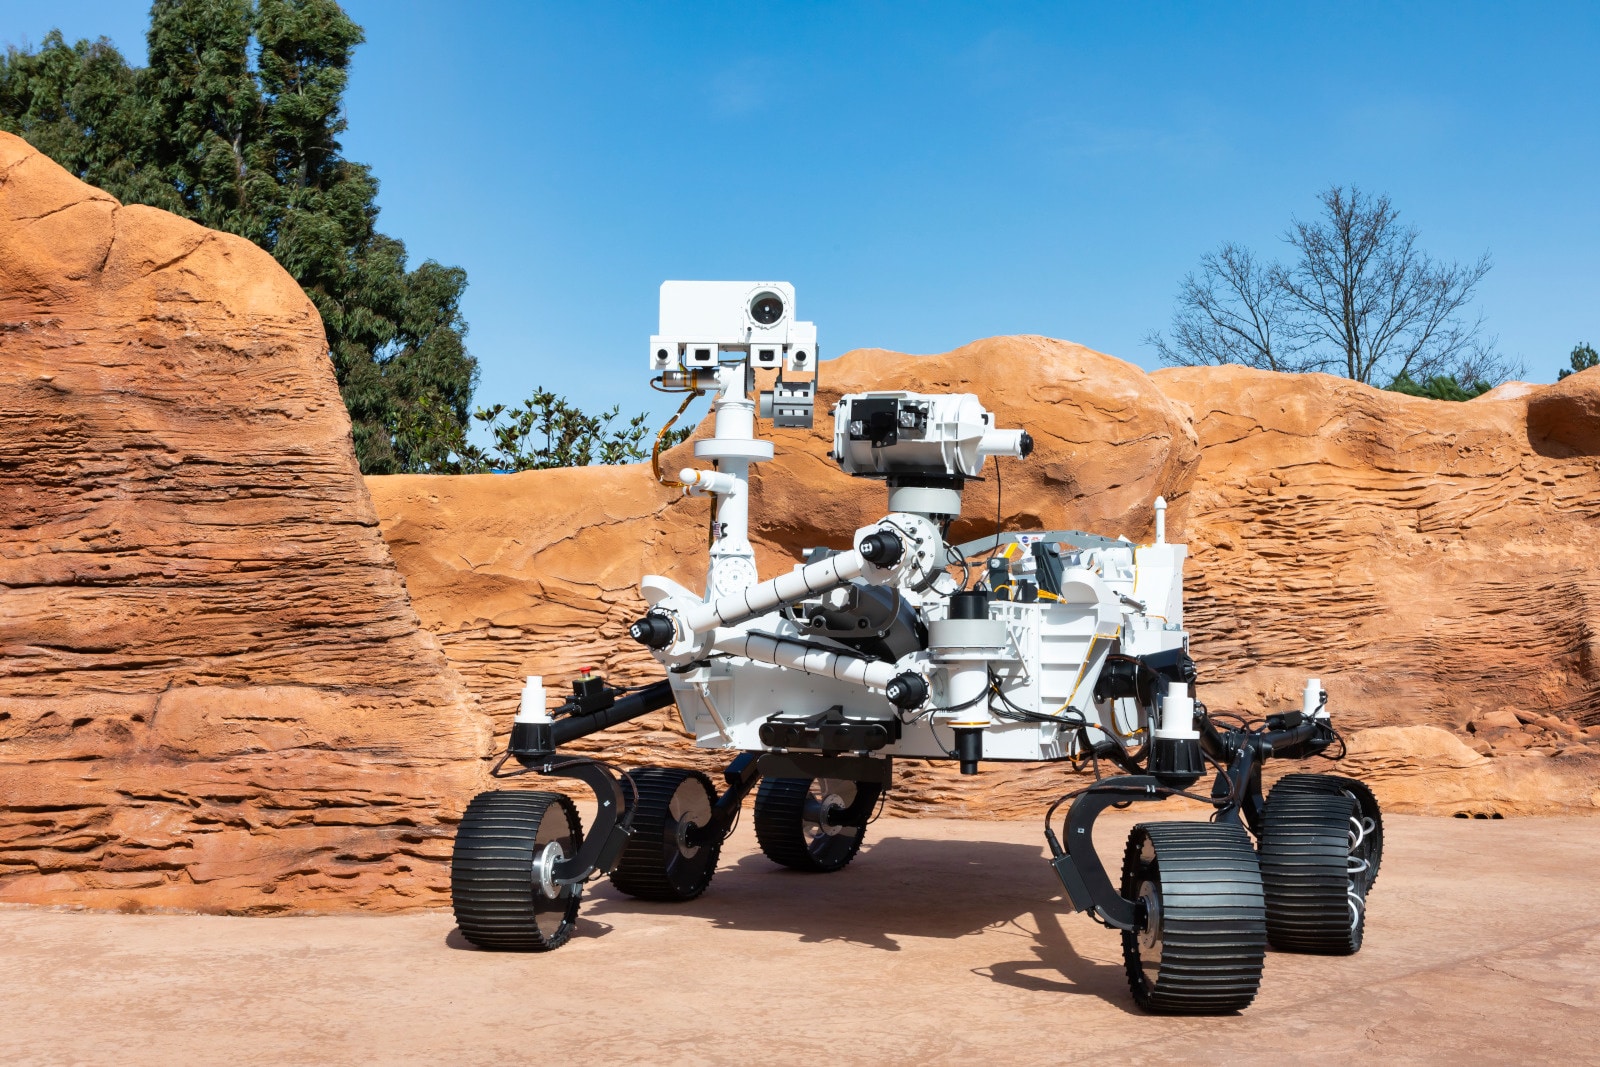 Réplique animée et taille réelle du rover Perseverance sur le Terrain Martien de la Cité de l'espace